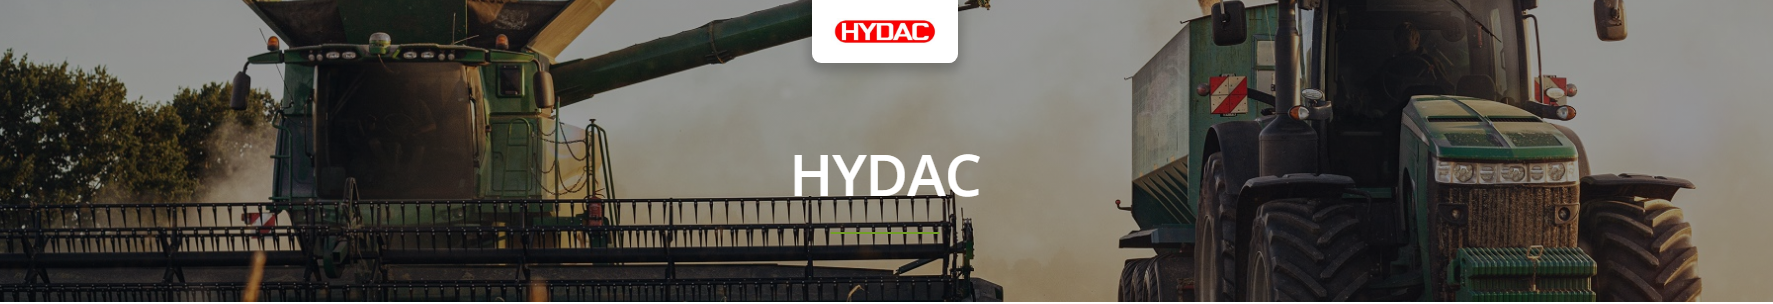 Hydac Hydraulic Pumps